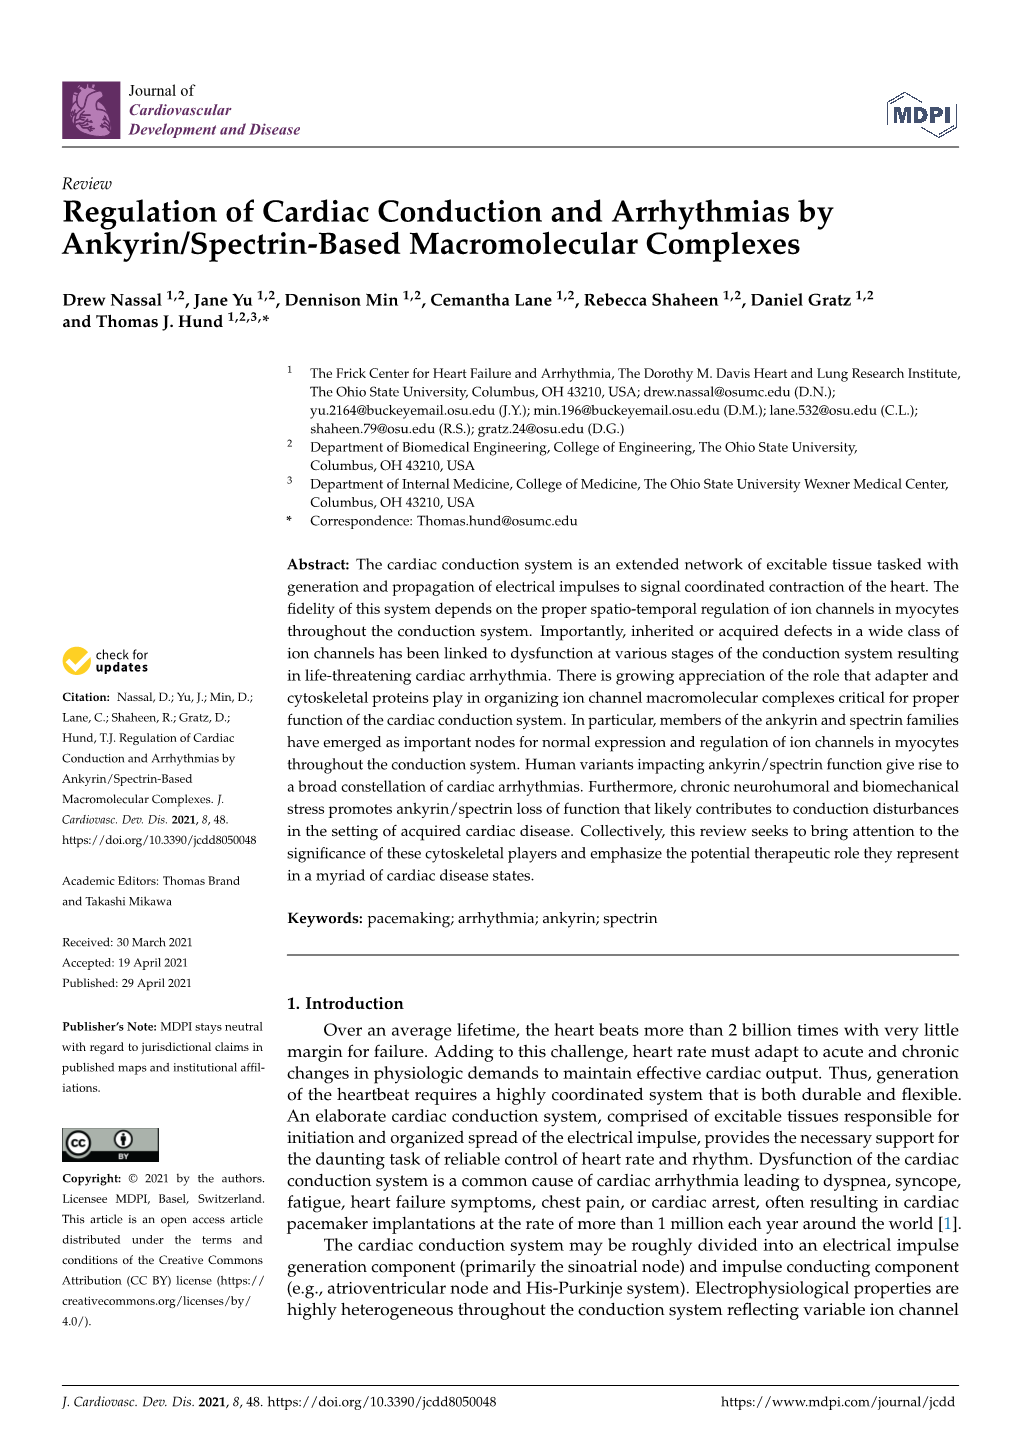 Regulation of Cardiac Conduction and Arrhythmias by Ankyrin/Spectrin-Based Macromolecular Complexes